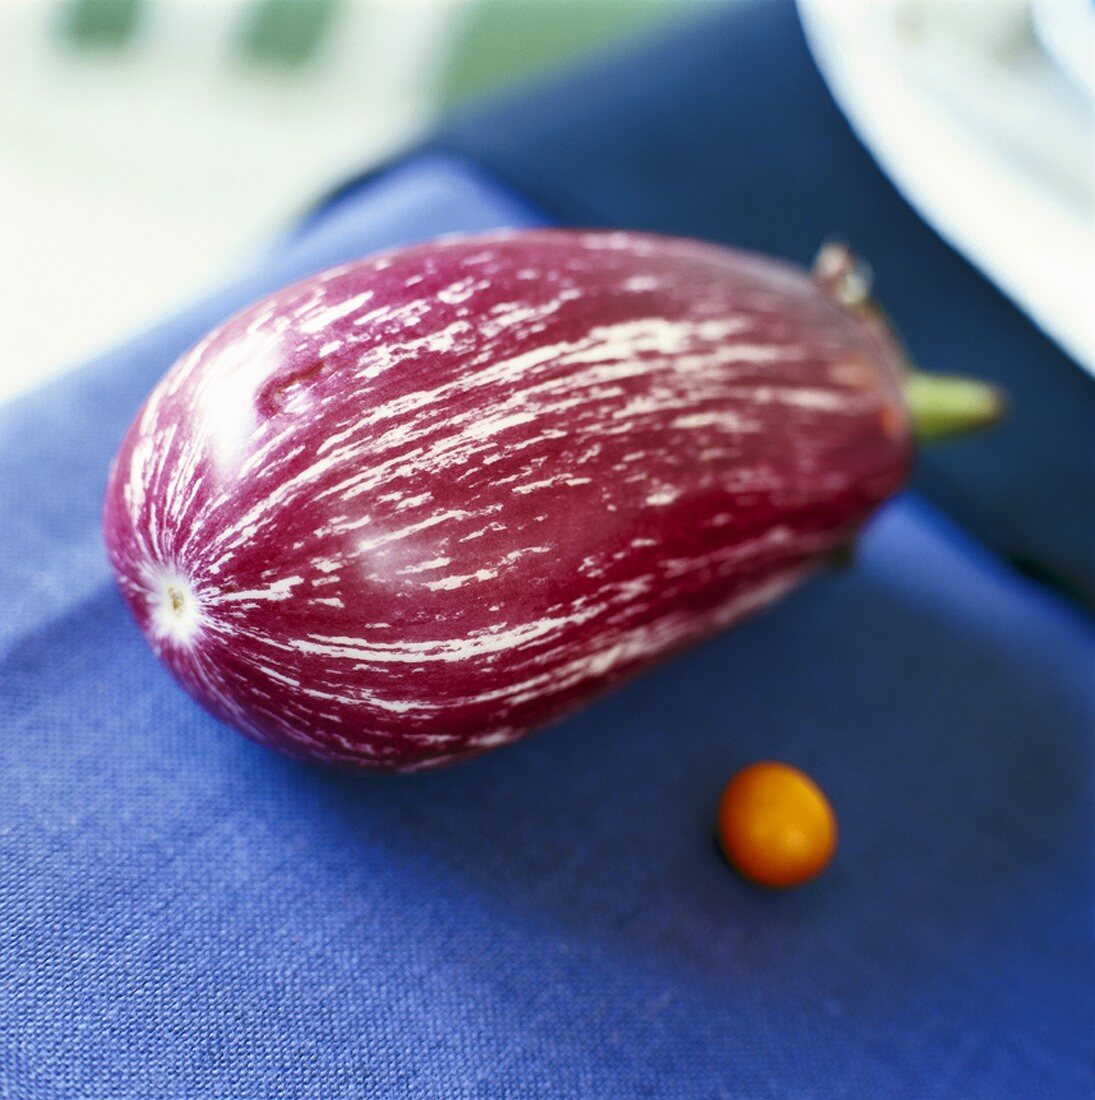 A striped aubergine